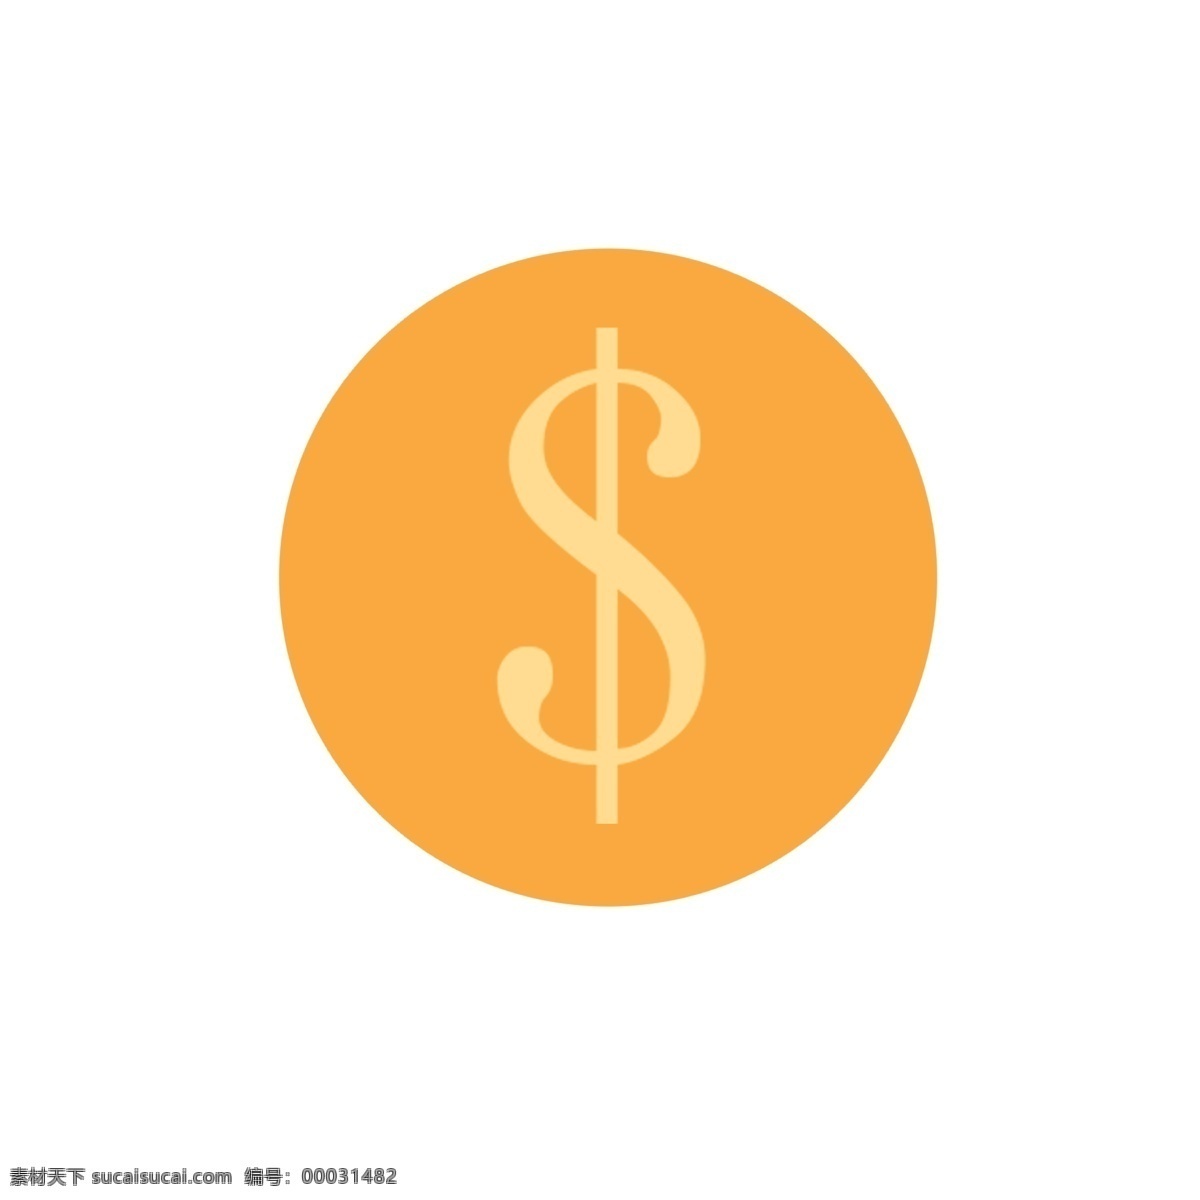 红色 圆形 人民币 图标 元素 财富 矢量图 商务 符号 卡通图标 金融